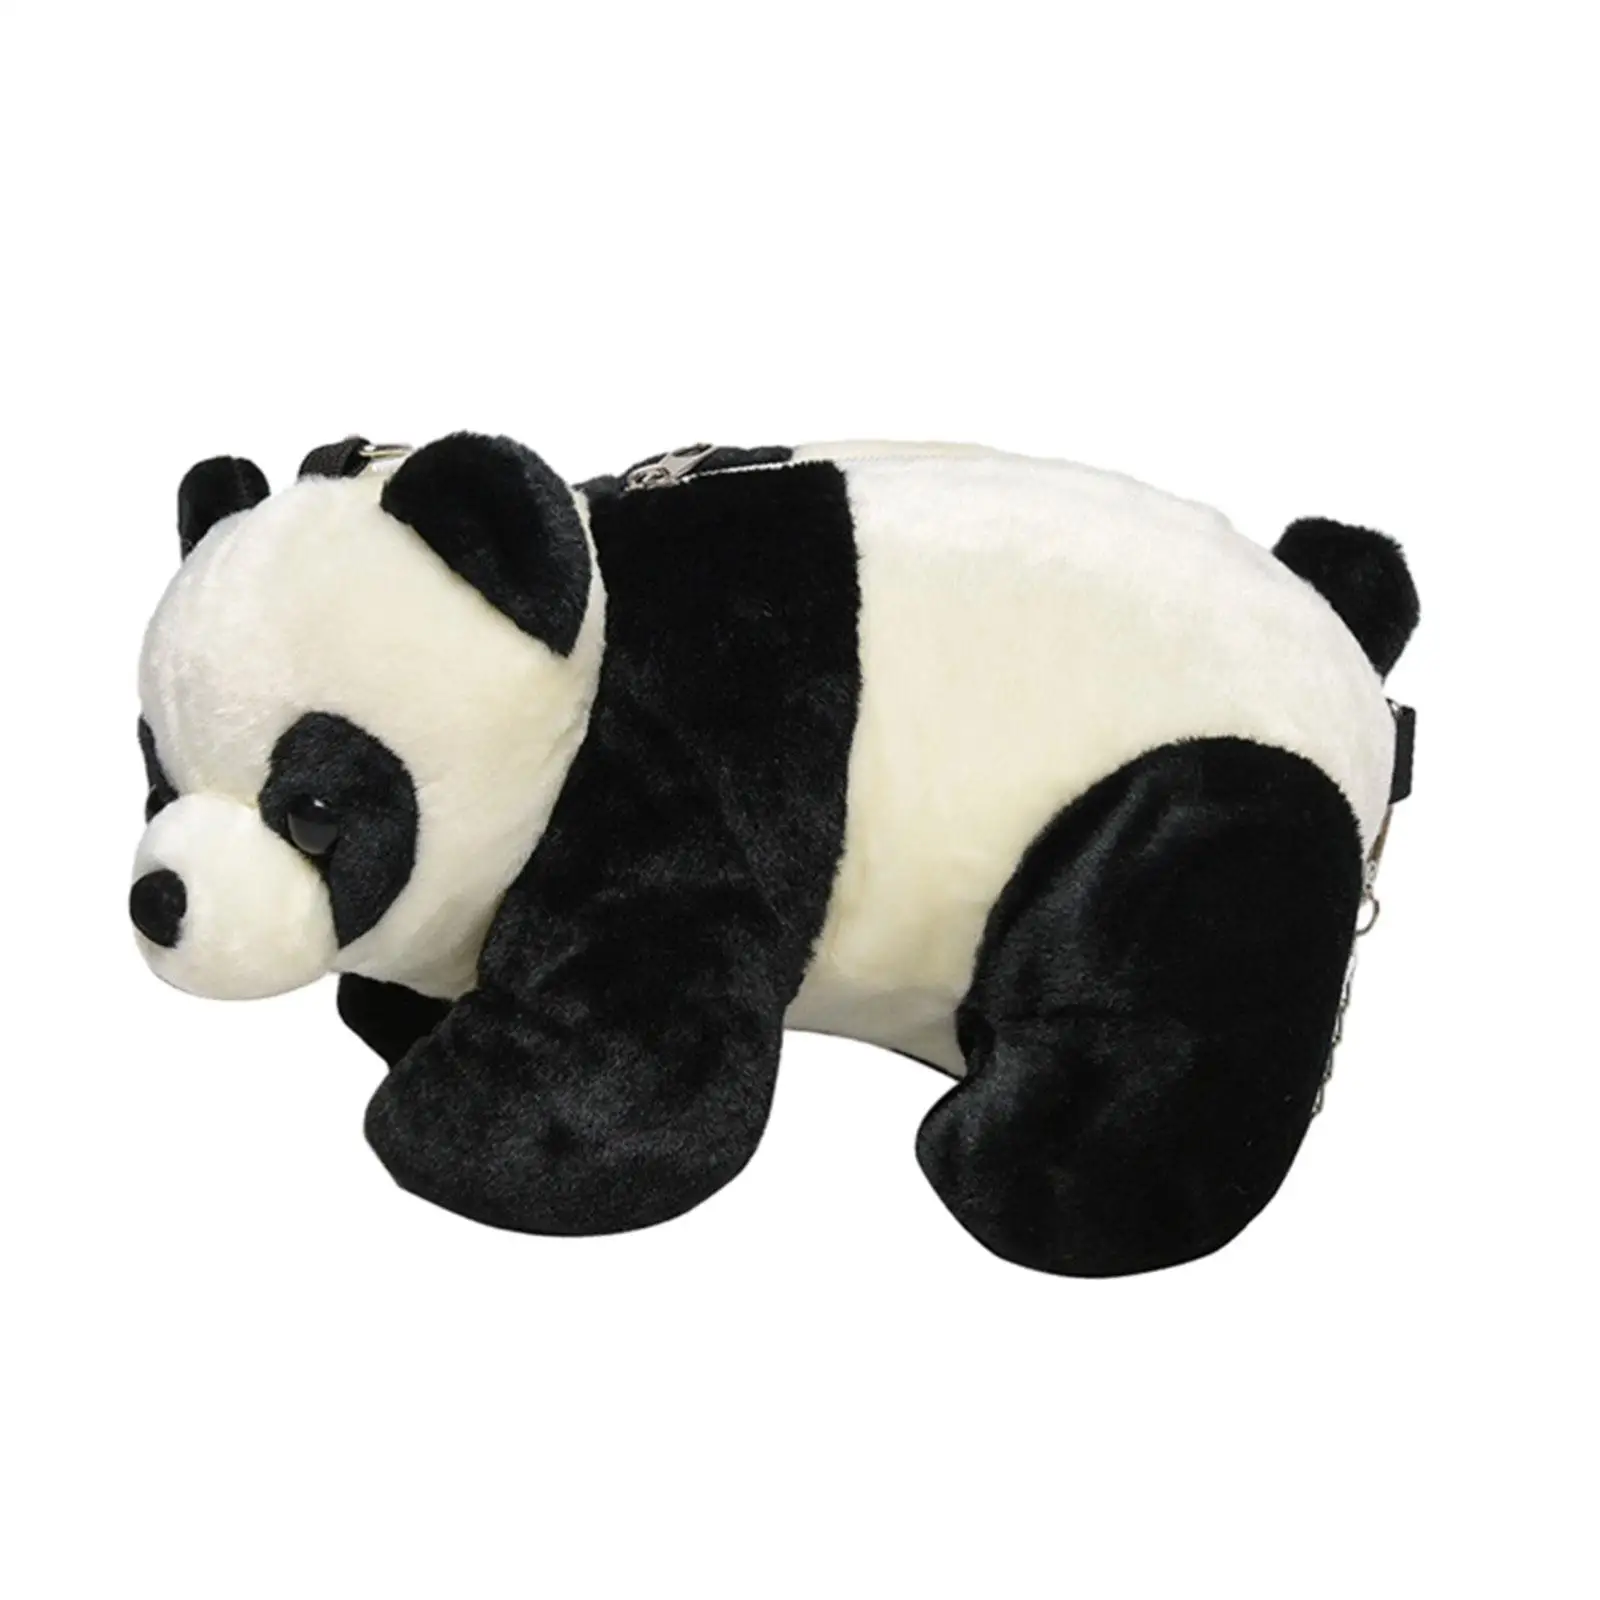 Panda Crossbody Sacos Senhora Adorável Animal De Pelúcia Sacola Saco De Viagem Lolita Acessórios Bolsa Bolsa De Ombro Das Mulheres Sacola Bolsa Imagem 5